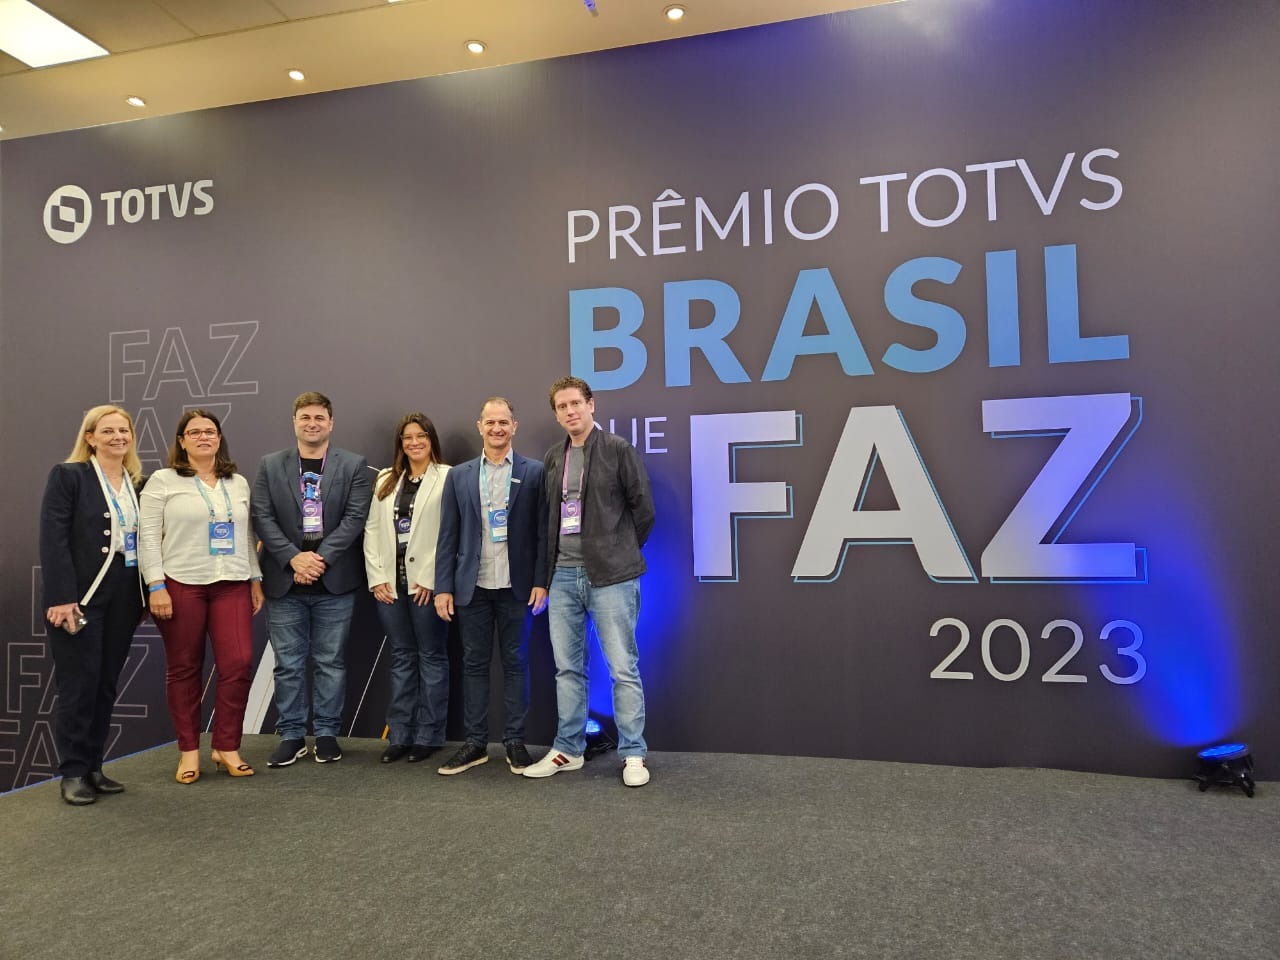 Tonin Finalista Prêmio Totvs Brasil que Faz 2023